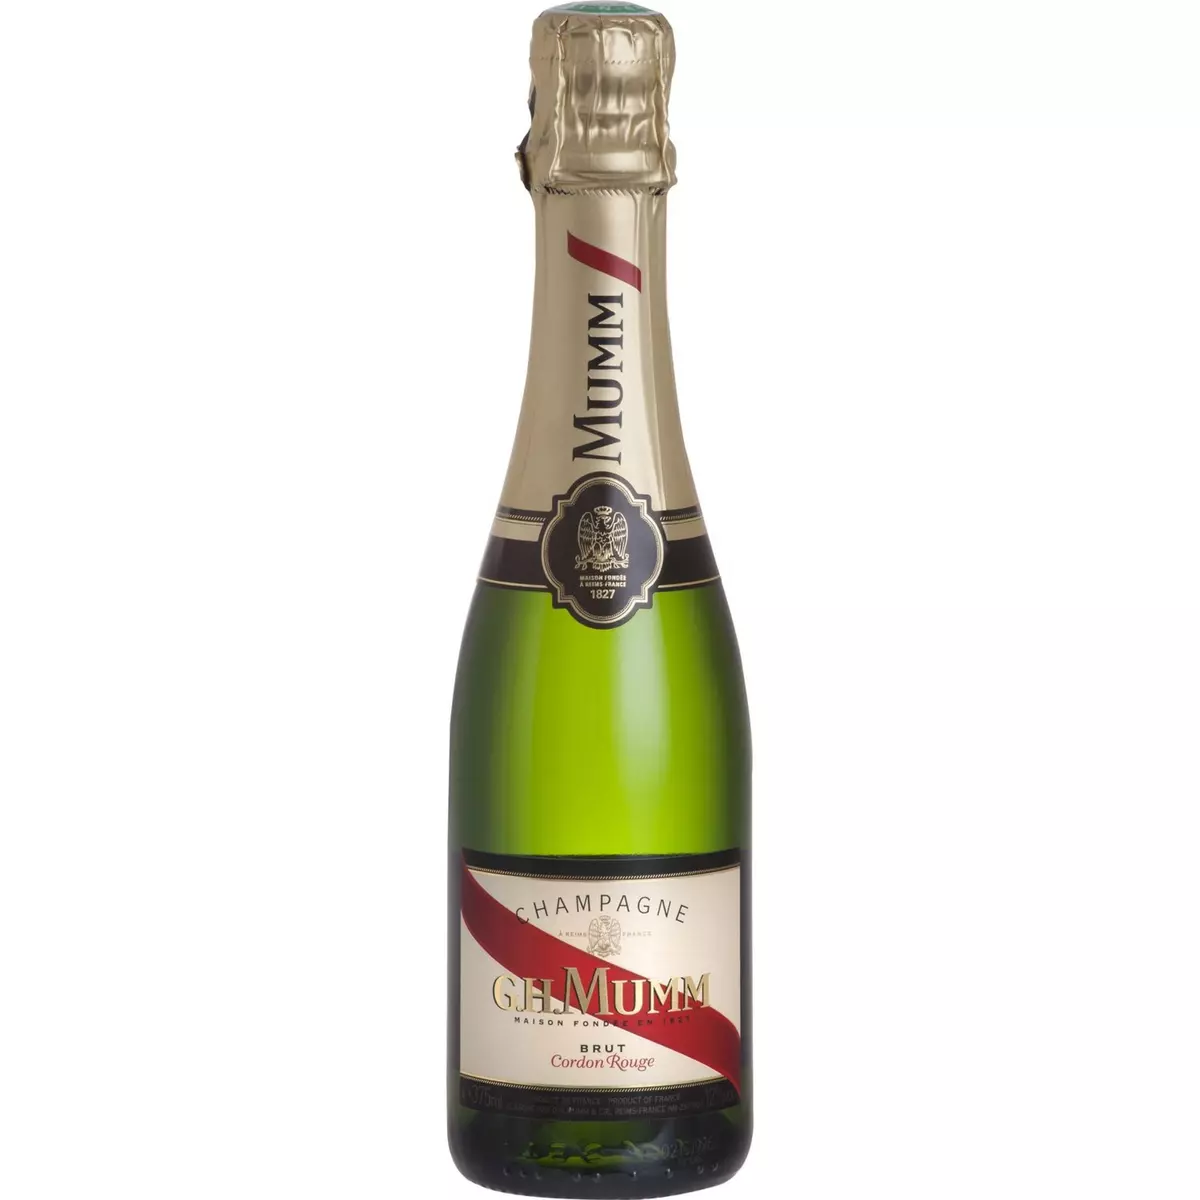 MUMM AOP Champagne brut Cordon rouge Demi-bouteilles 37,5cl